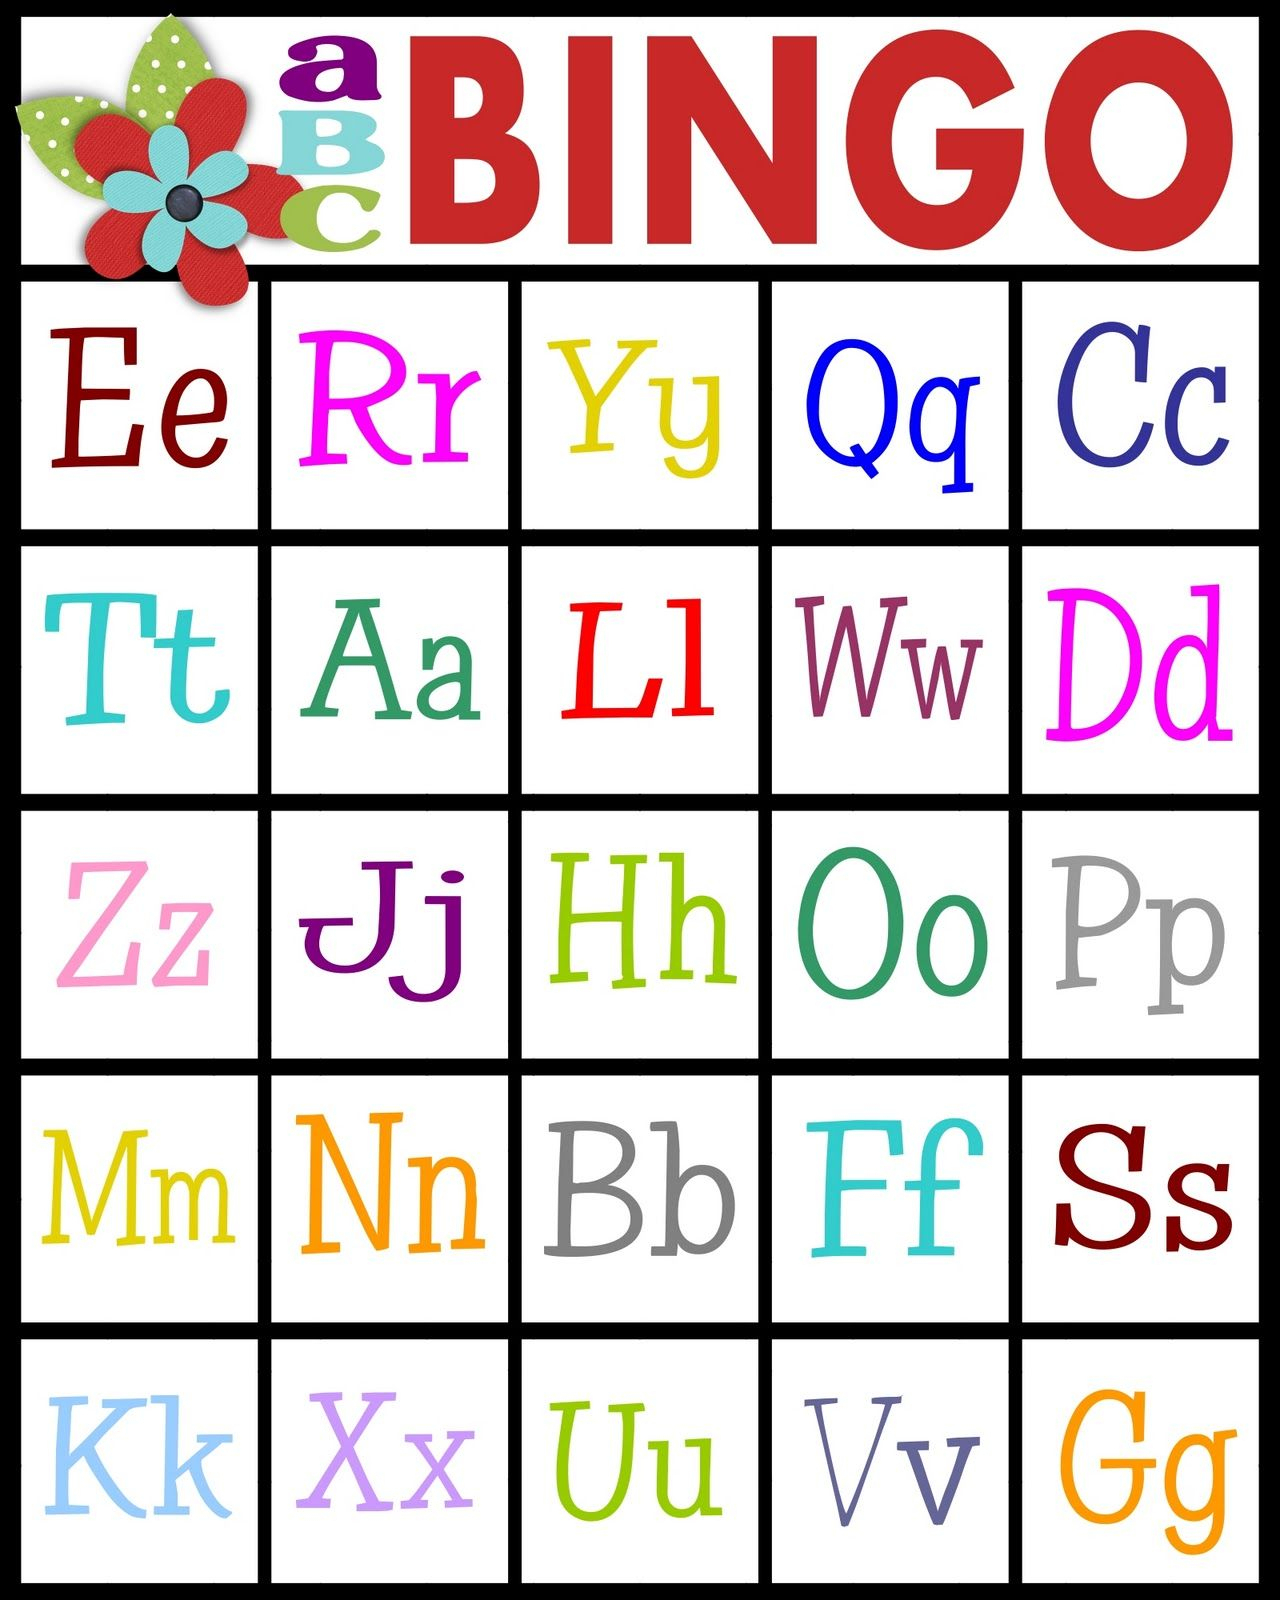 For Teaching Letter Recognition Or Letter Sounds | Teaching regarding Alphabet Bingo Worksheets